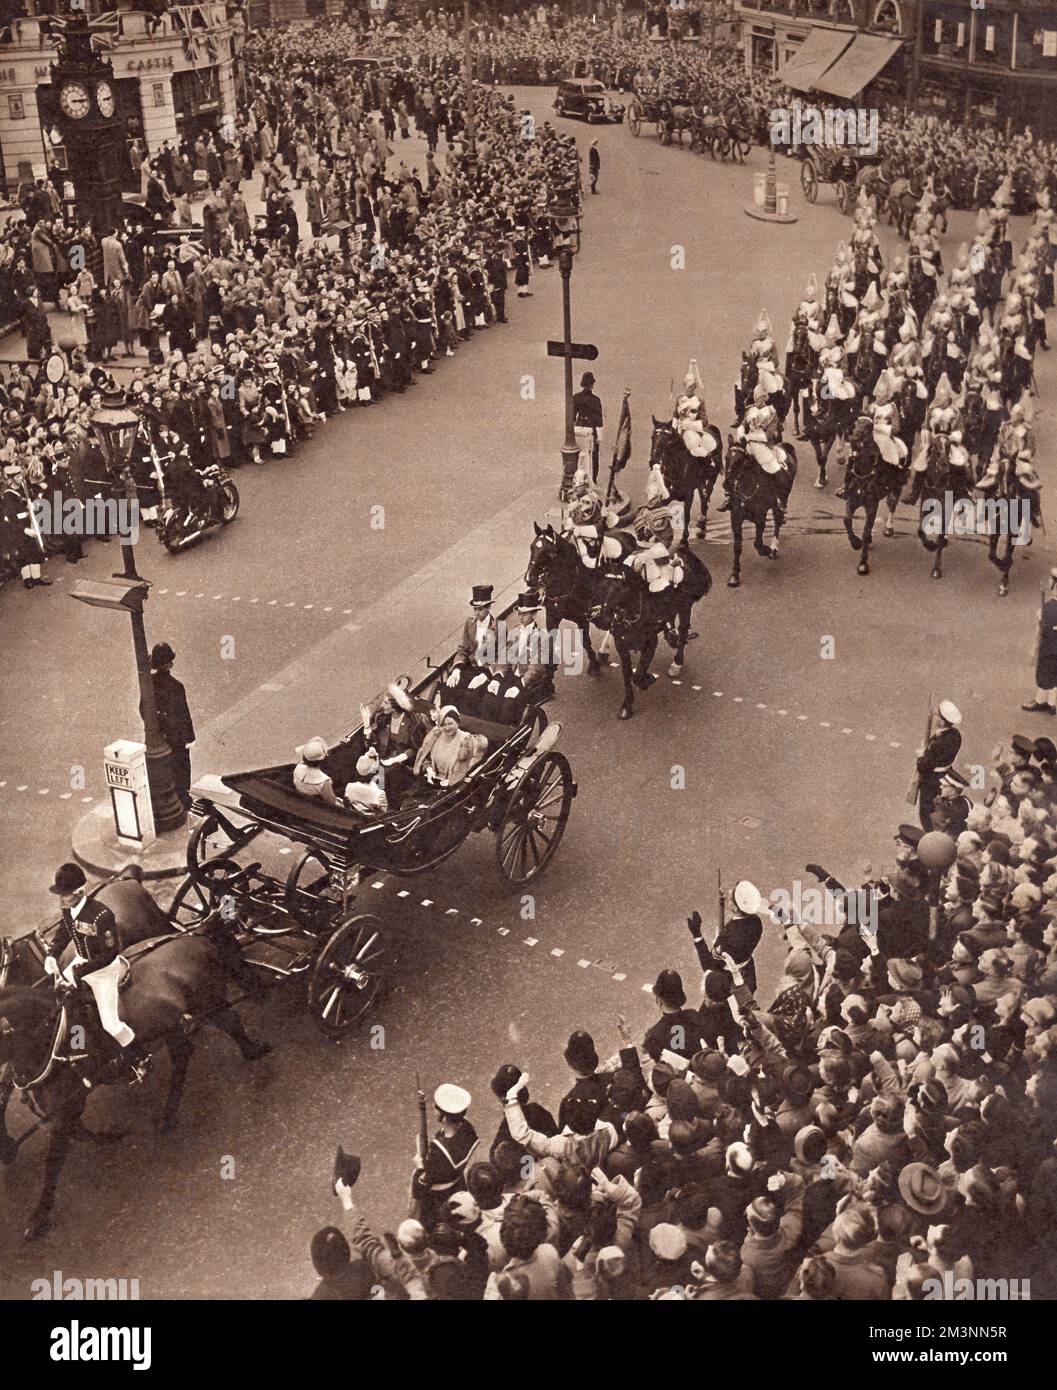 Dänische königliche Besucher verlassen Victoria Station auf dem Weg zum Buckingham Palast -- Staatsprozession mit einer Kutsche mit Königin Ingrid von Dänemark, Königin Elizabeth, Prinzessin Elizabeth und Prinzessin Margaret. Datum: 8. Mai 1951 Stockfoto